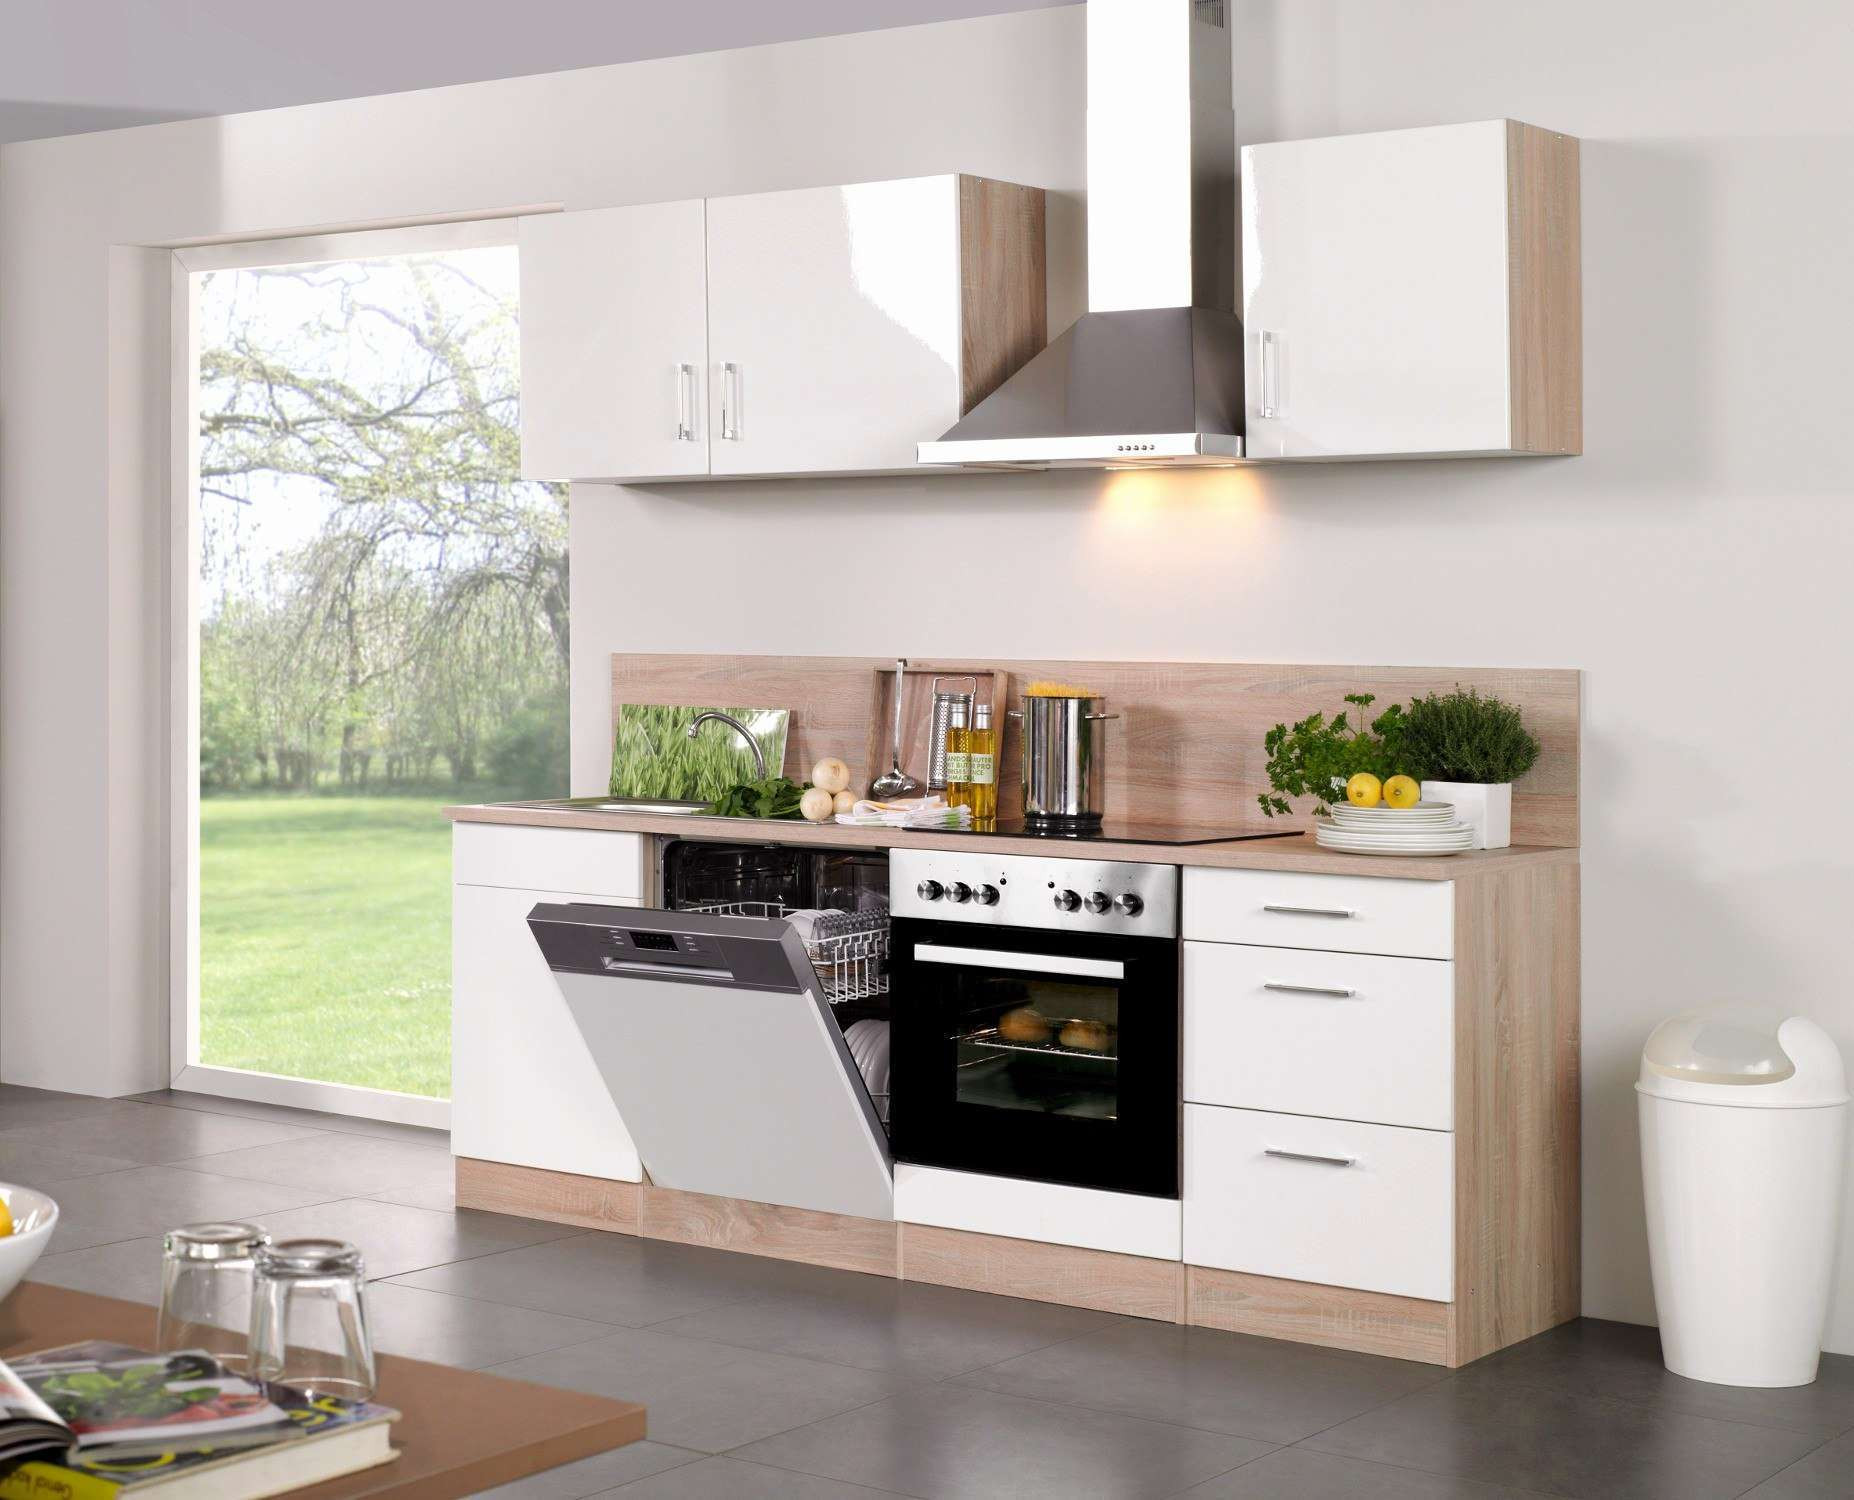 Küchenzeile Mit Elektrogeräten Günstig
 Genial Küchenzeile Mit Geräten Ikea